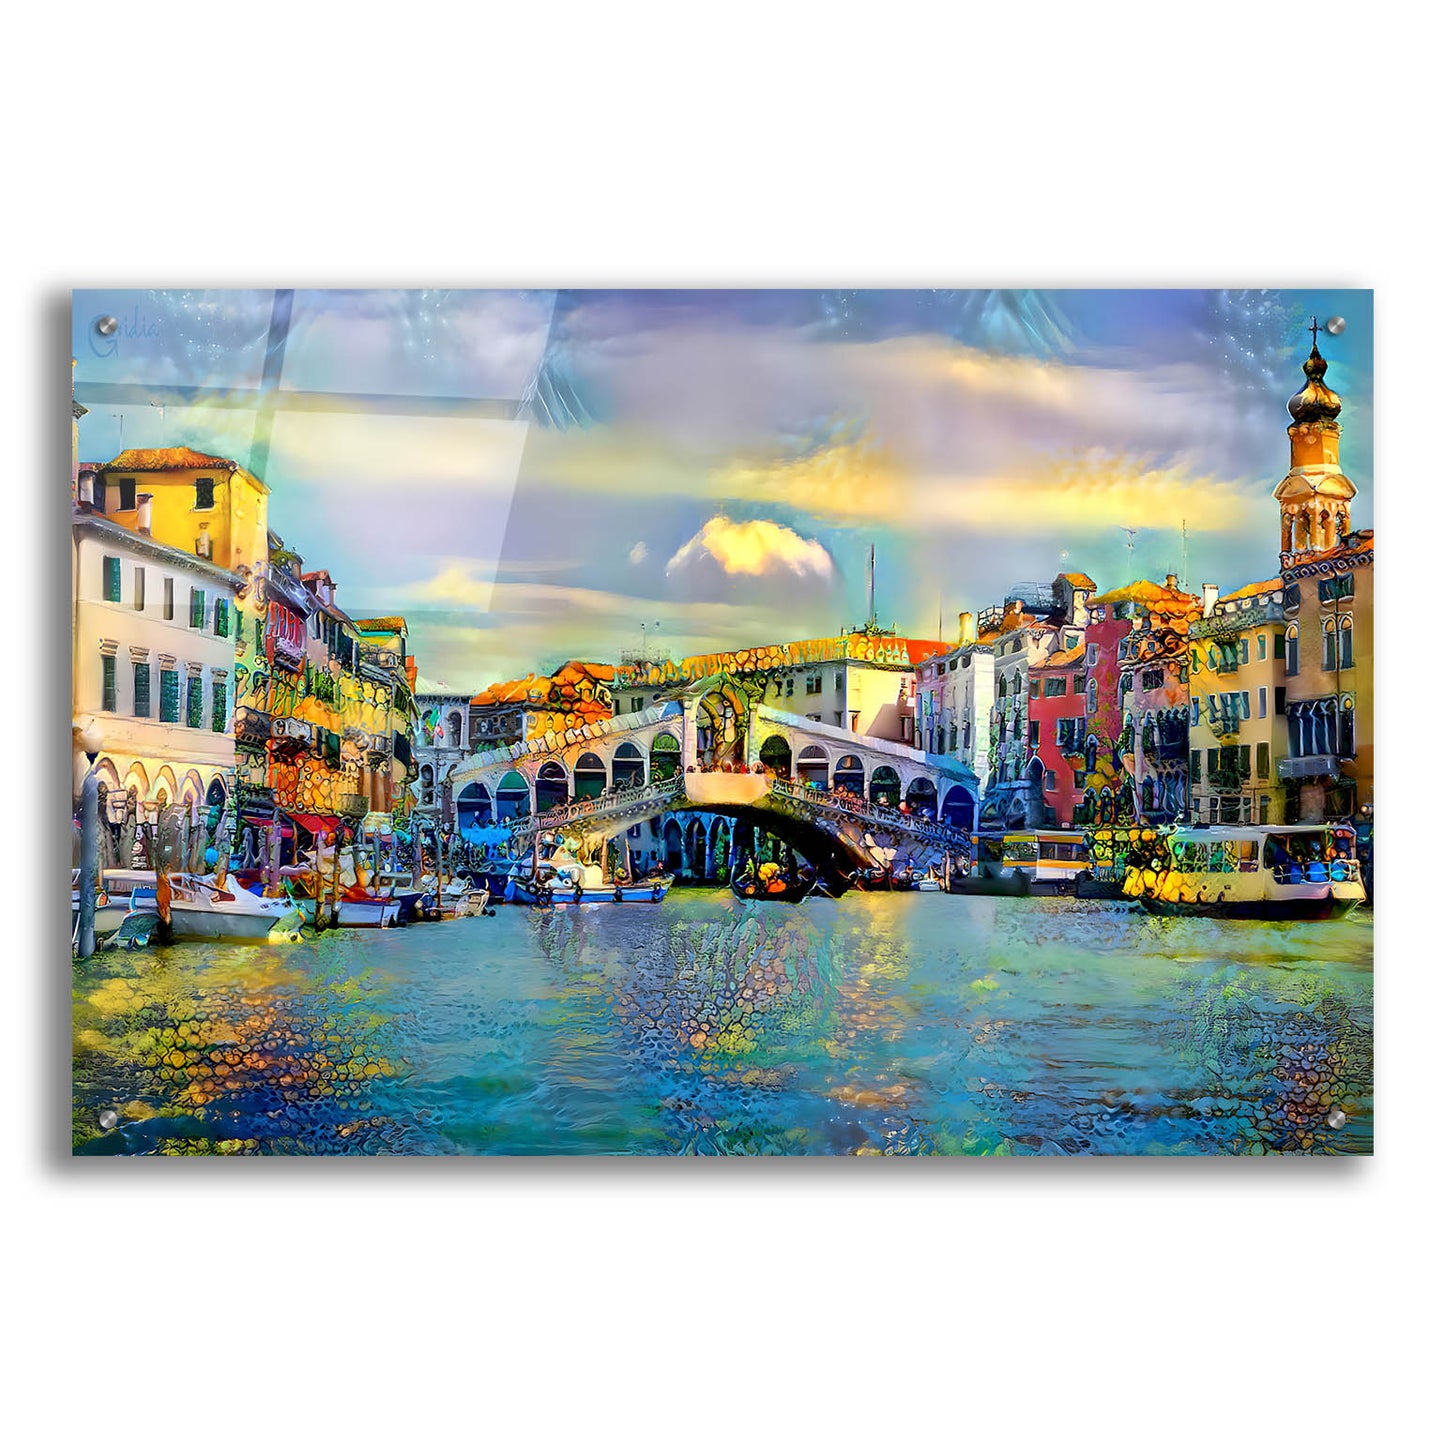 Epic Art 'Venice Italy Rialto Bridge' by Pedro Gavidia, Acrylic Glass Wall Art,36x24